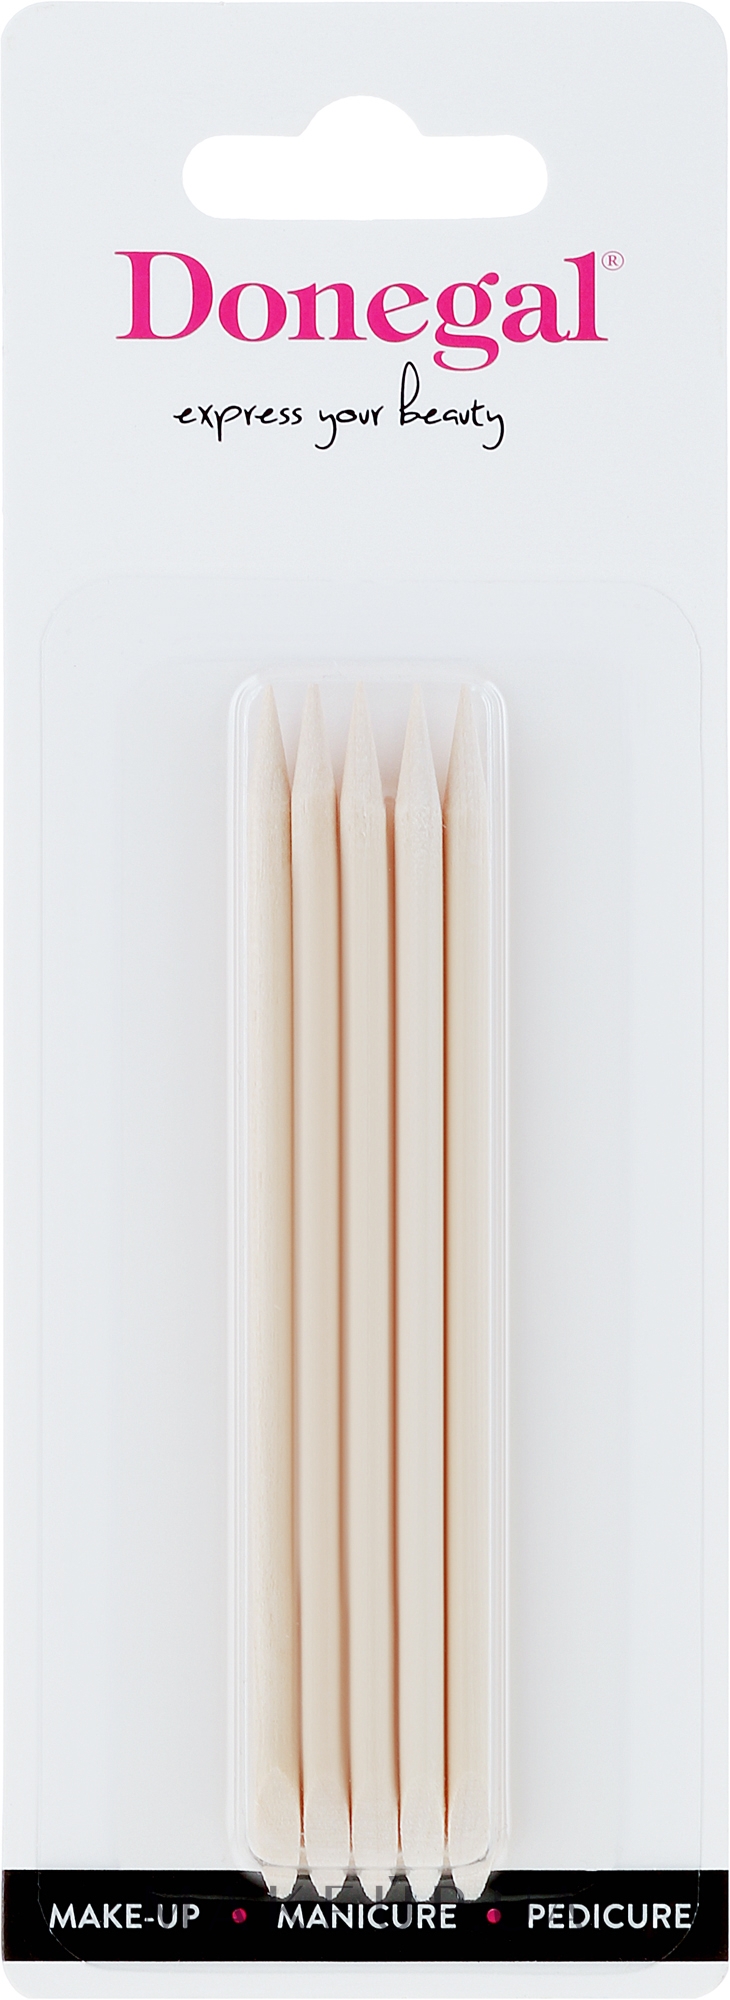 Апельсиновые палочки для маникюра 9.5 см, 9765 - Donegal — фото 5шт